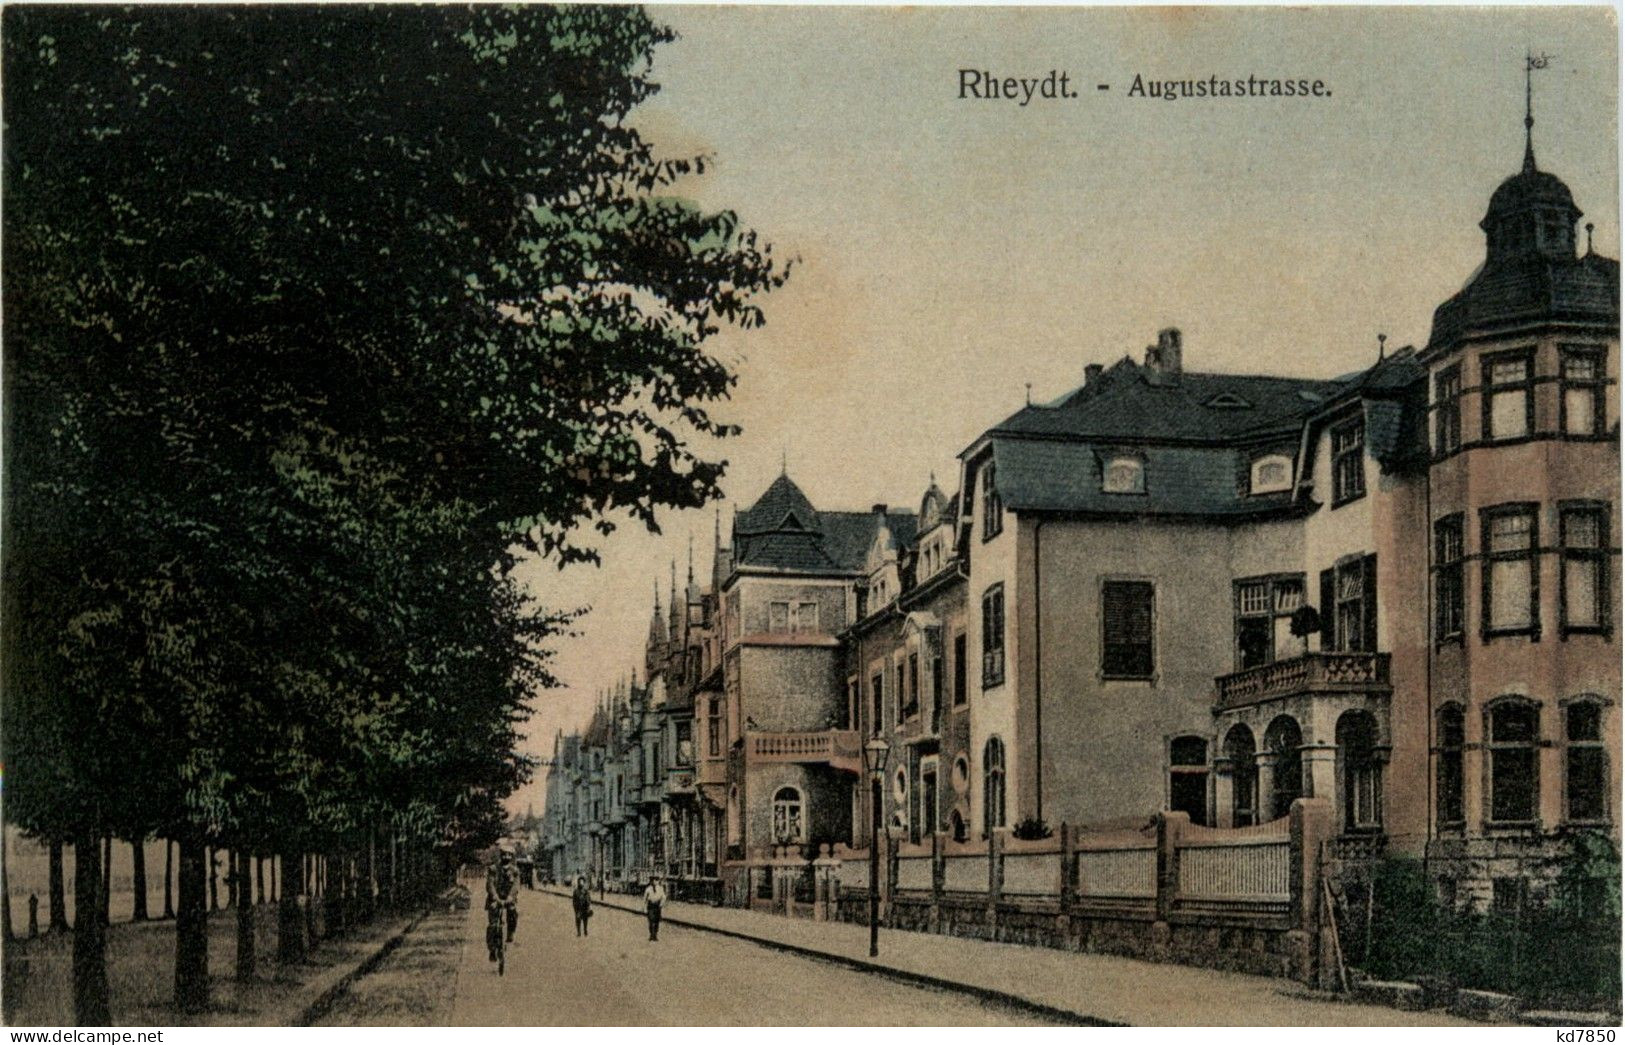 Rheydt - Augustastrasse - Moenchengladbach